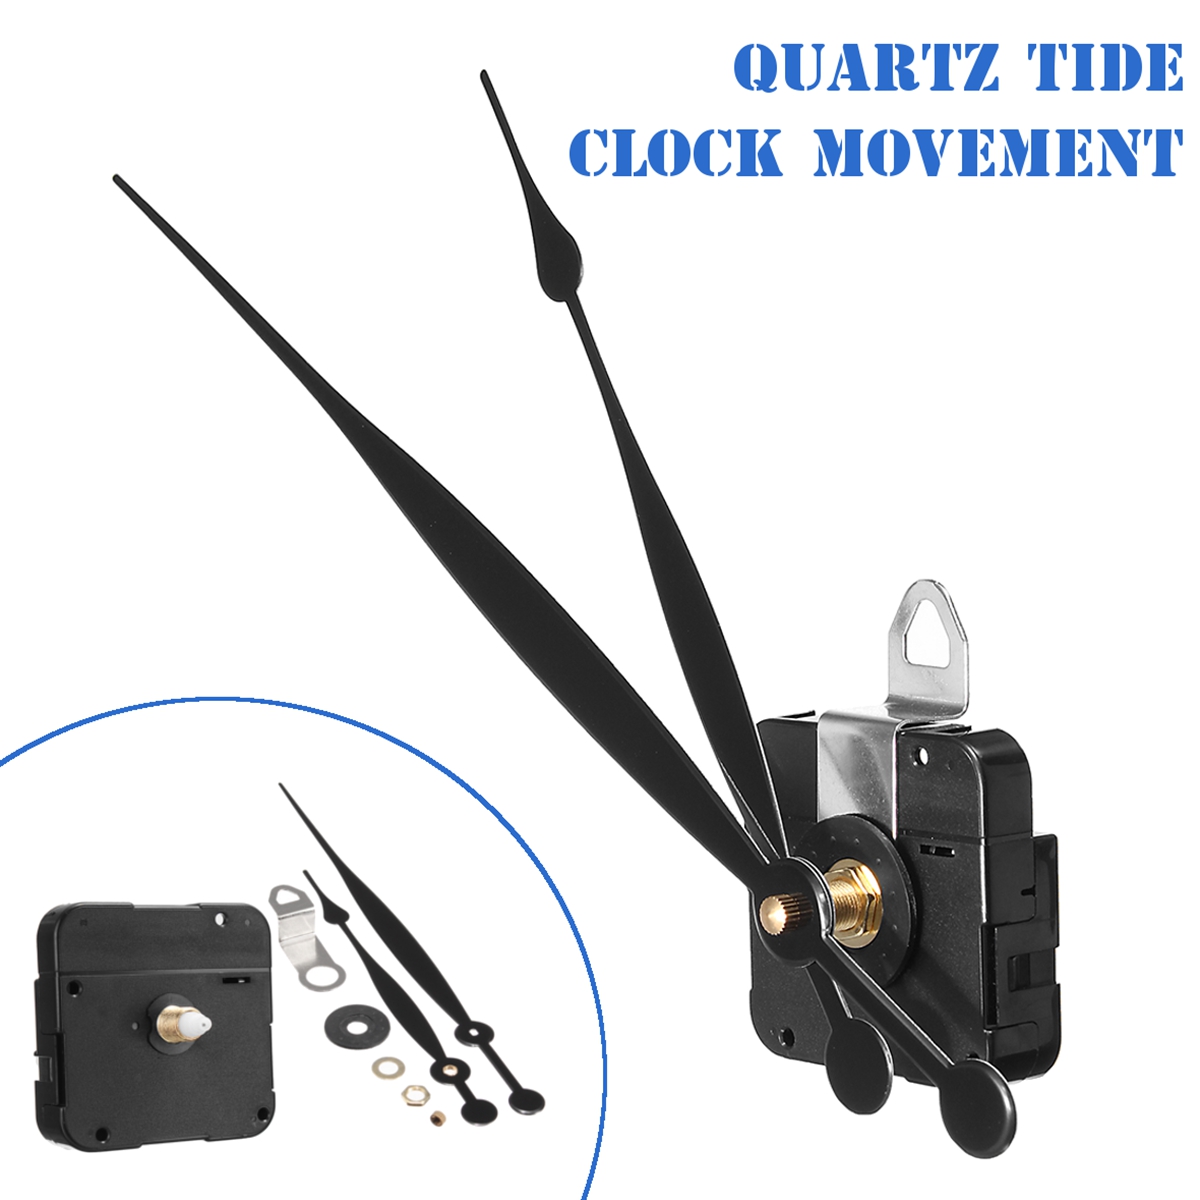 Long-Hand-Quartz-Clock-Movement-Mechanism-Motor-High-Torque-Hour-Minute-Hands-DIY-Module-Kit-1333713-6